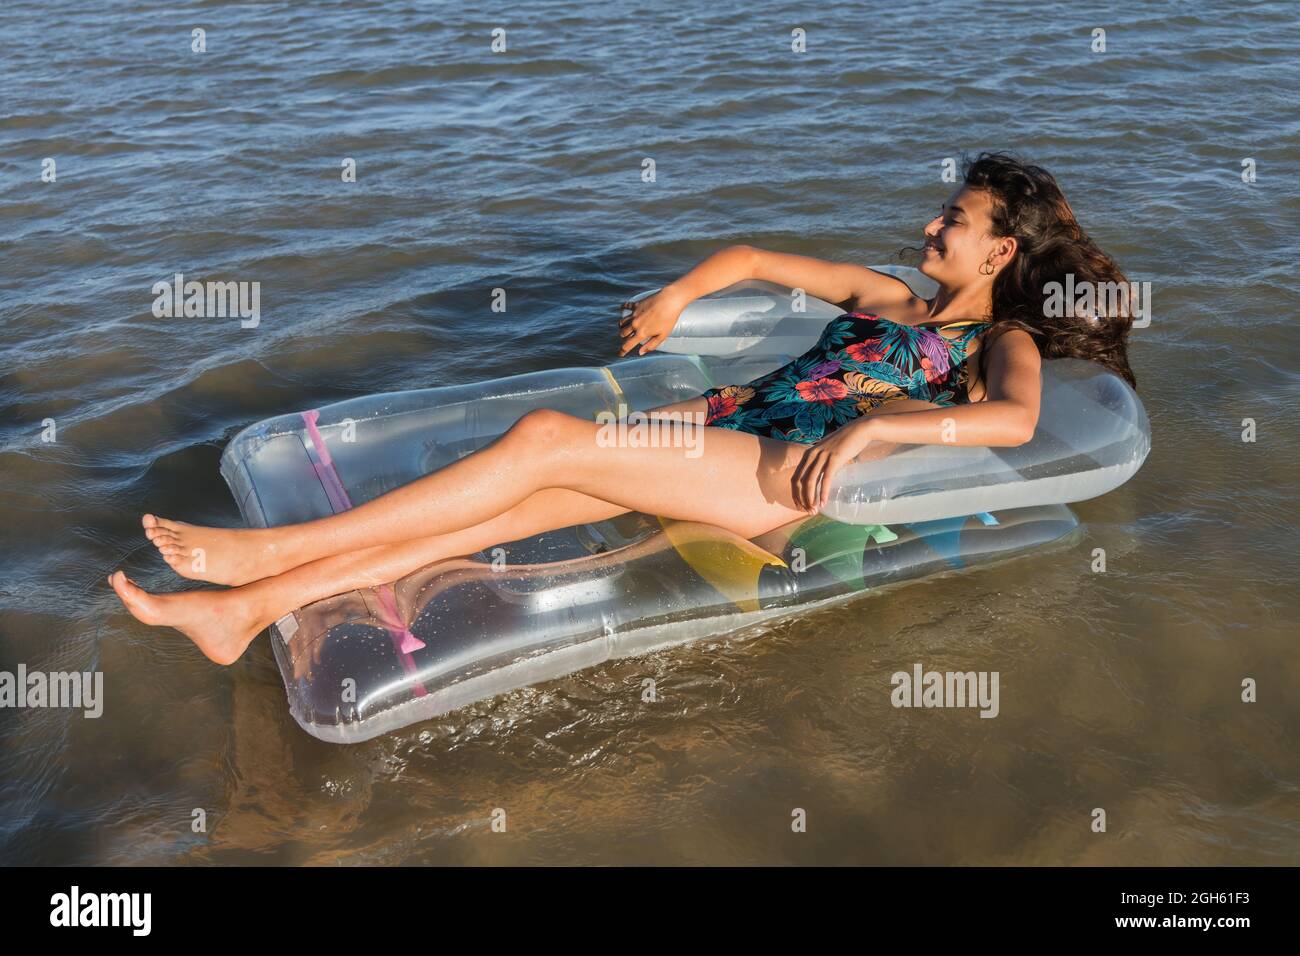 Inhalt Frau, die auf einer aufblasbaren Matratze liegt und an sonnigen Sommertagen auf dem Meerwasser schwimmt und wegschaut Stockfoto